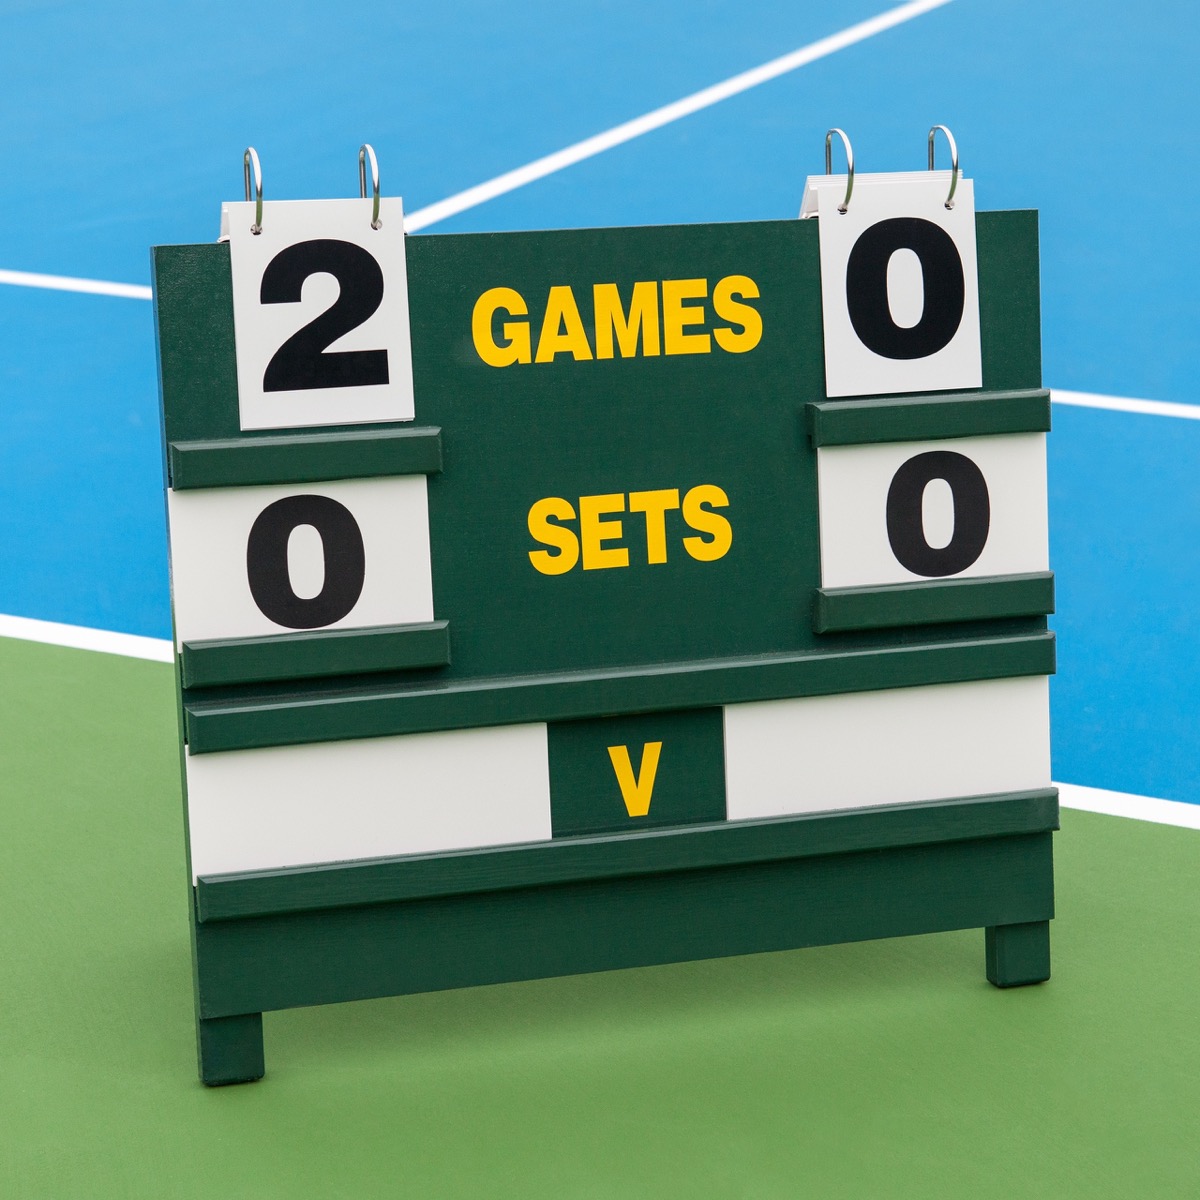 A simple wooden tennis scoreboard